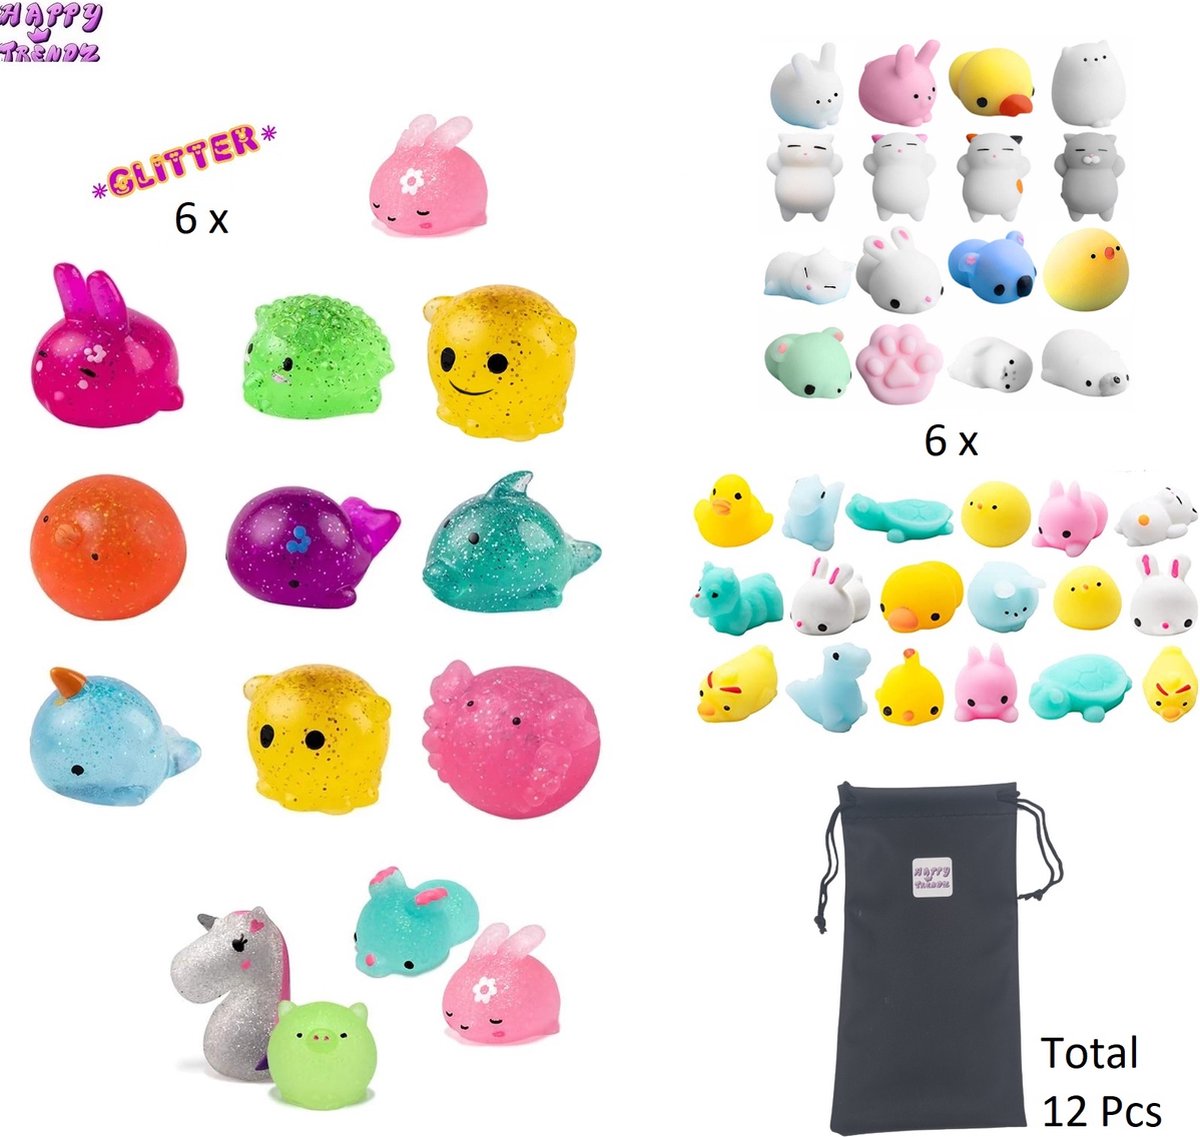 Happy Trendz® Mochi squishy 12 Stuks in opbergzakje - Fidget toys - Soft animal - Mochies Glitter 6 x - Mochies 6 x - Antistress - Siliconen - multicolor - 12 stuks met opbergzakje -